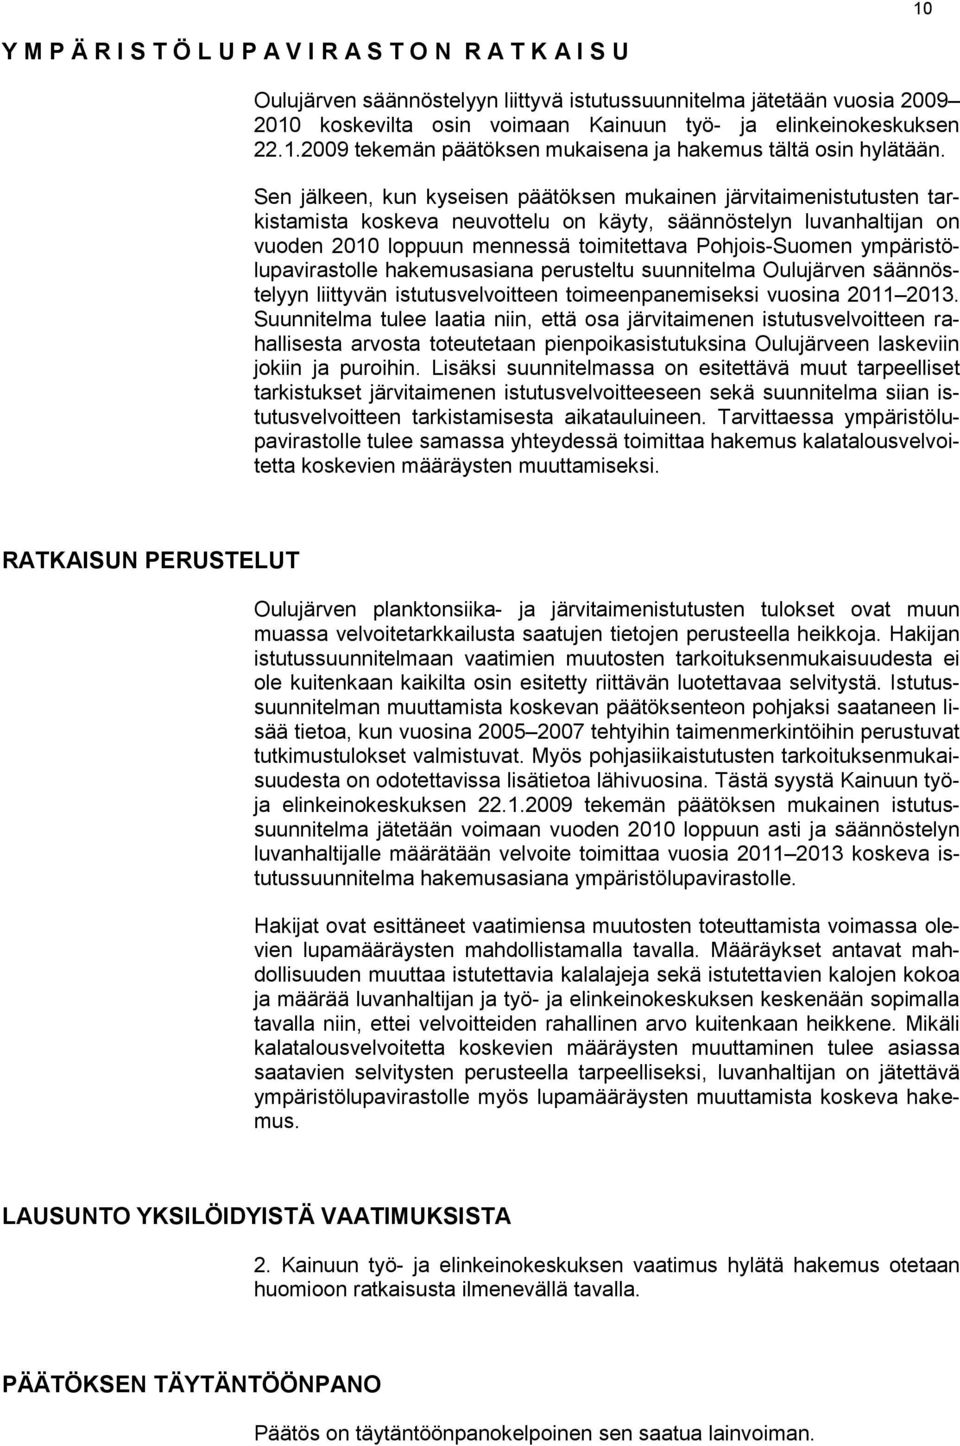 Sen jälkeen, kun kyseisen päätöksen mukainen järvitaimenistutusten tarkistamista koskeva neuvottelu on käyty, säännöstelyn luvanhaltijan on vuoden 2010 loppuun mennessä toimitettava Pohjois-Suomen